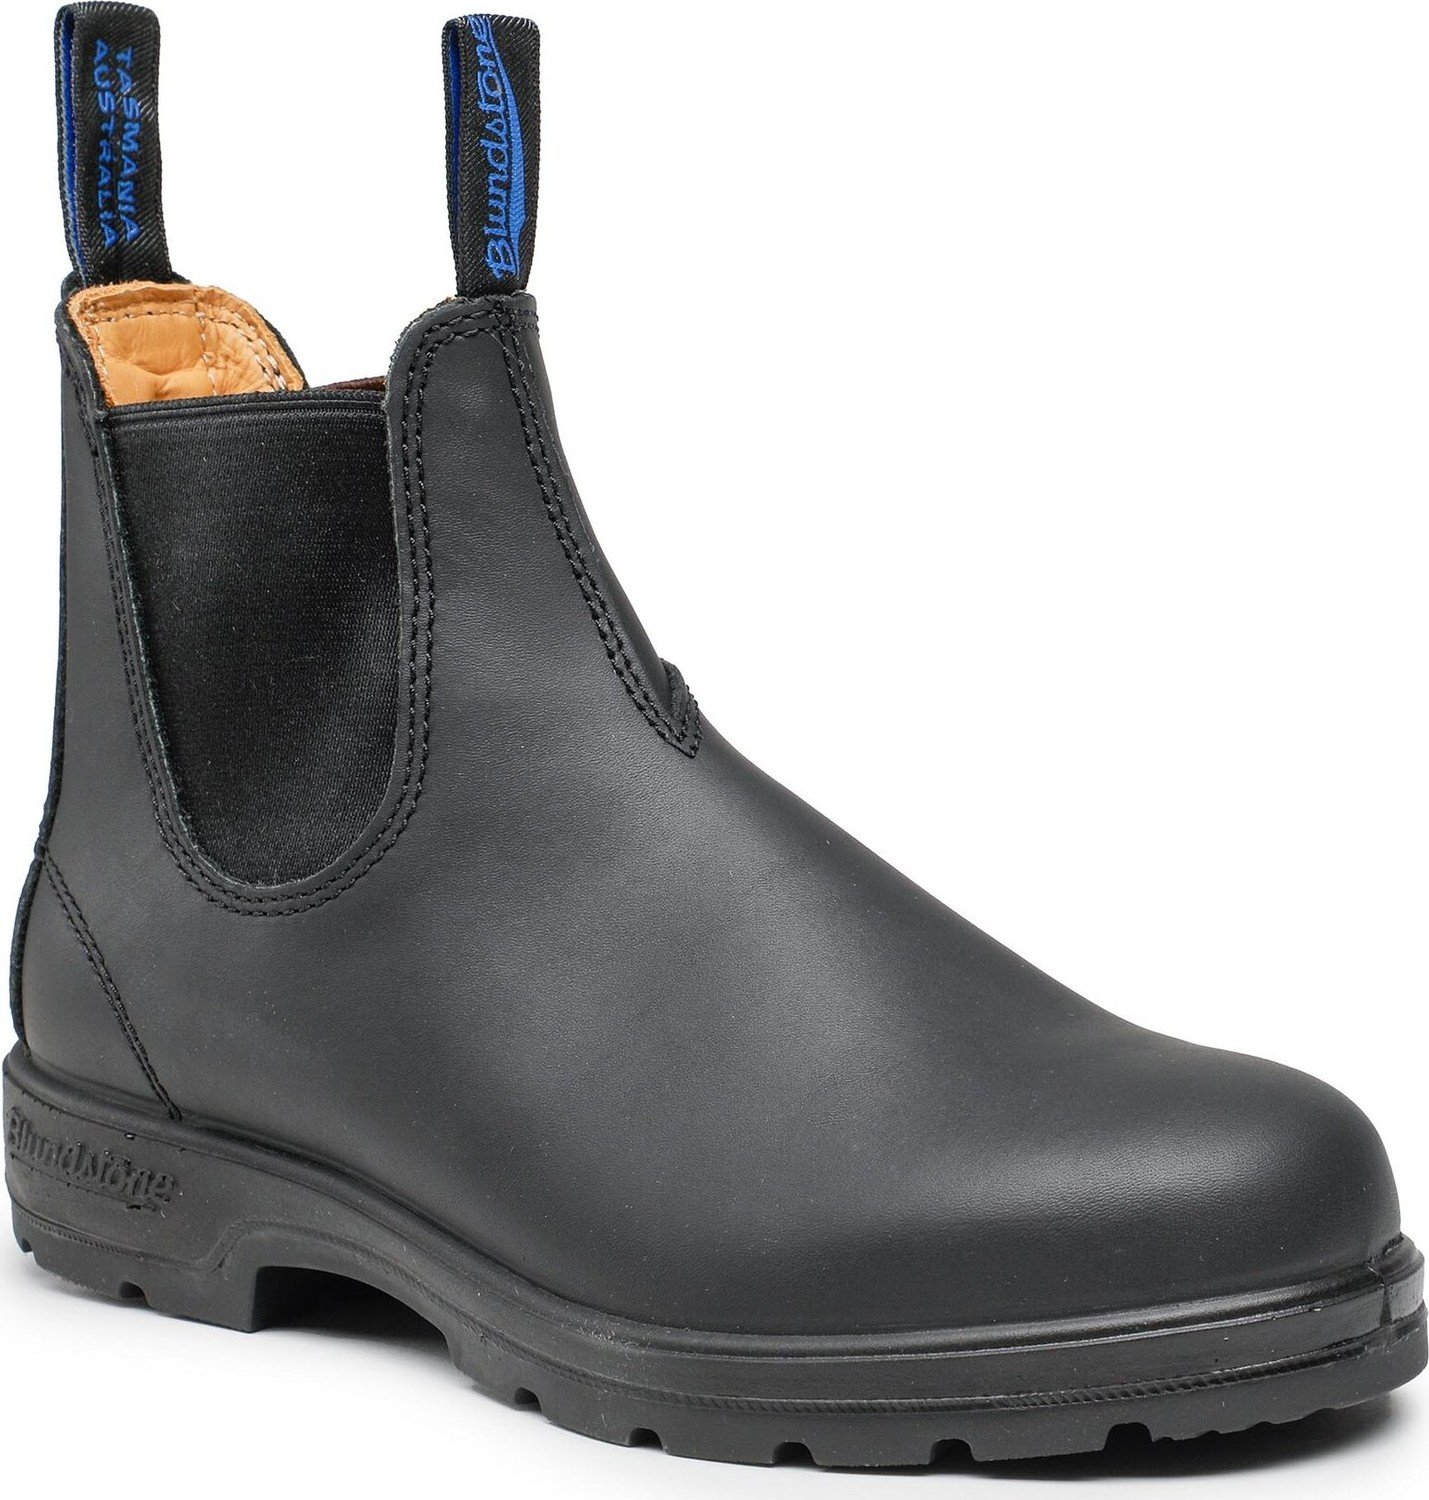 Kotníková obuv s elastickým prvkem Blundstone 566 Black